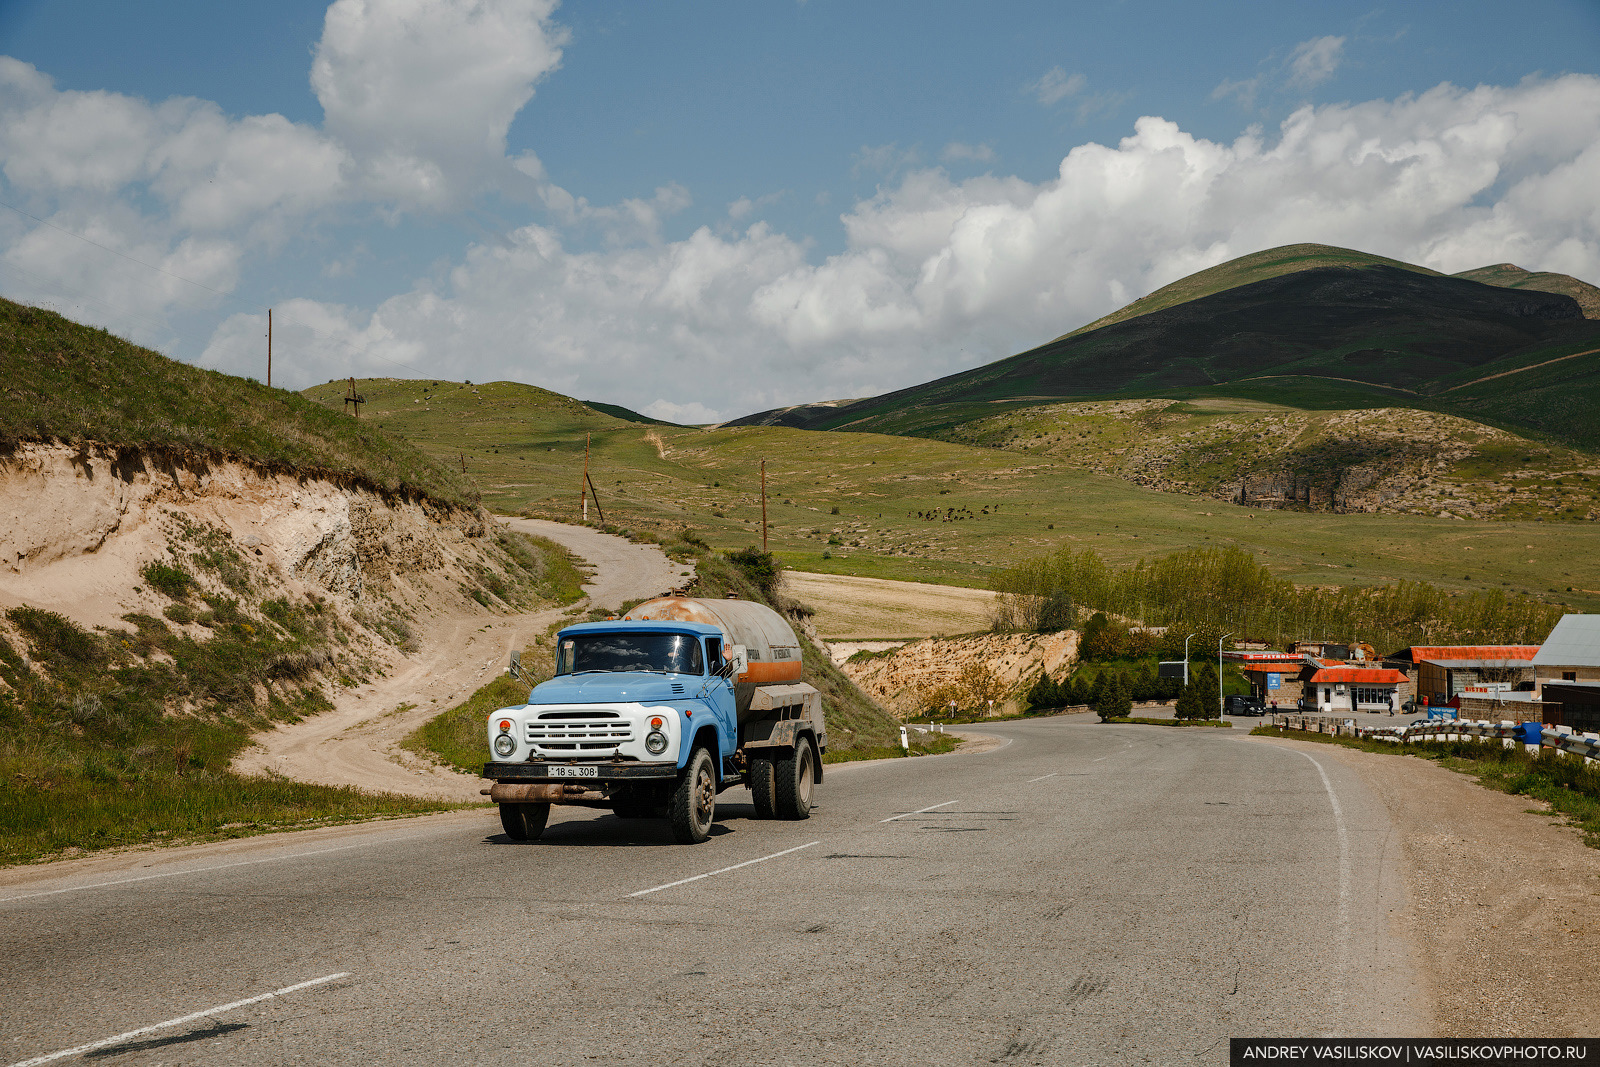 Можно ли ехать в армению. Старые машины в Армении. Путешествие на машине по Армении. Ереван путешествие на машине. Дикий авторынок в Армении.